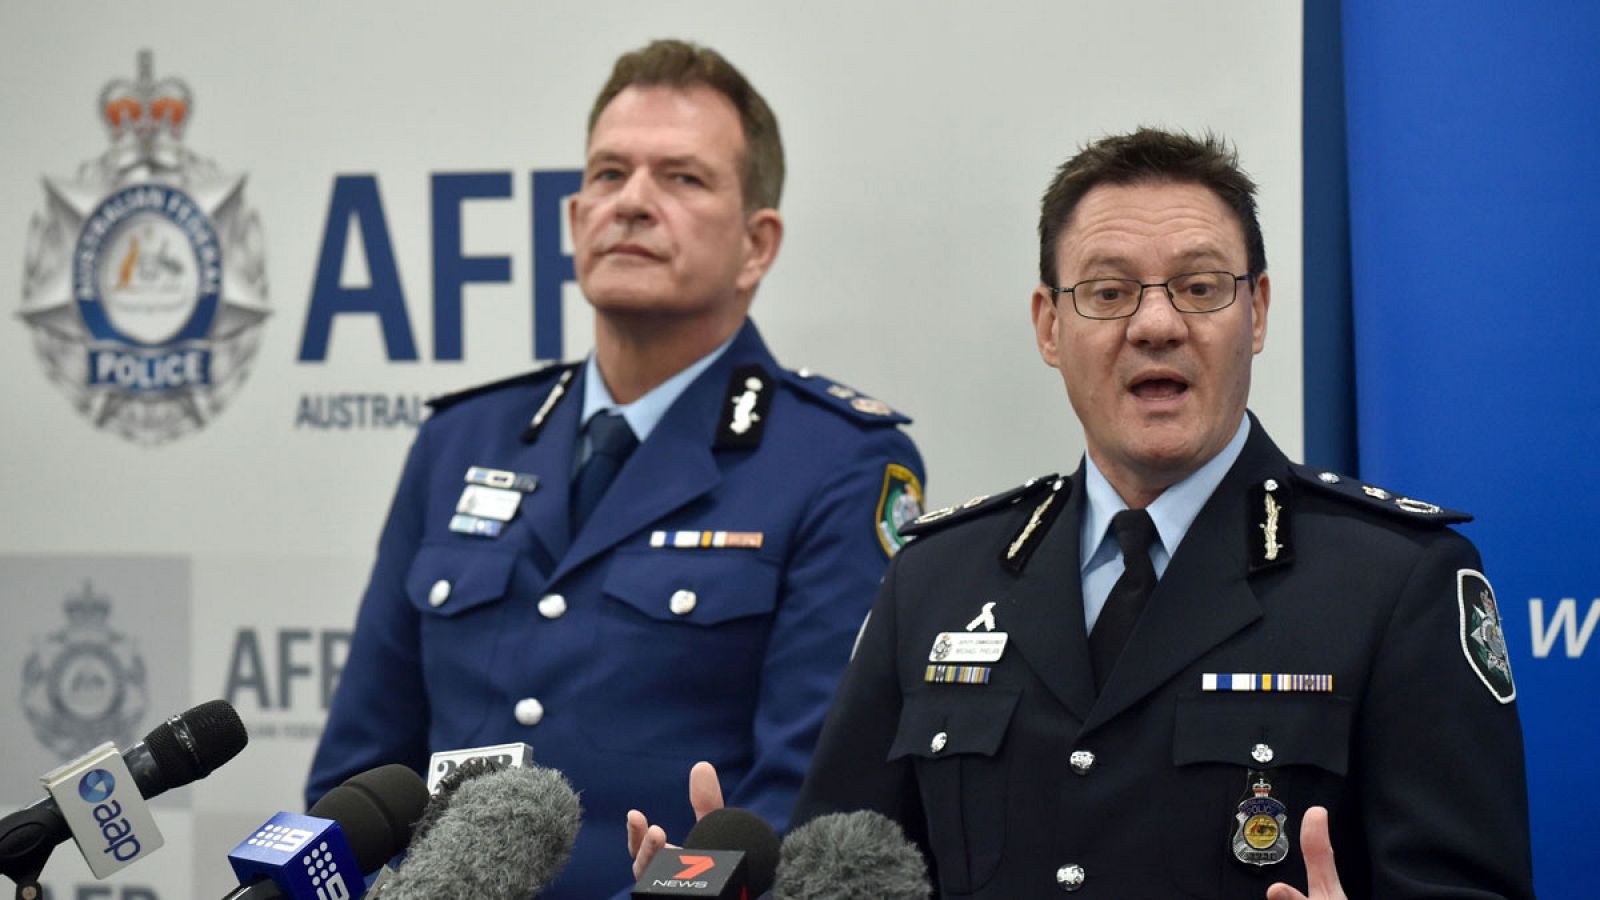 El subcomisionado de la Policía Australiana, Michael Phelan, en una rueda de prensa.